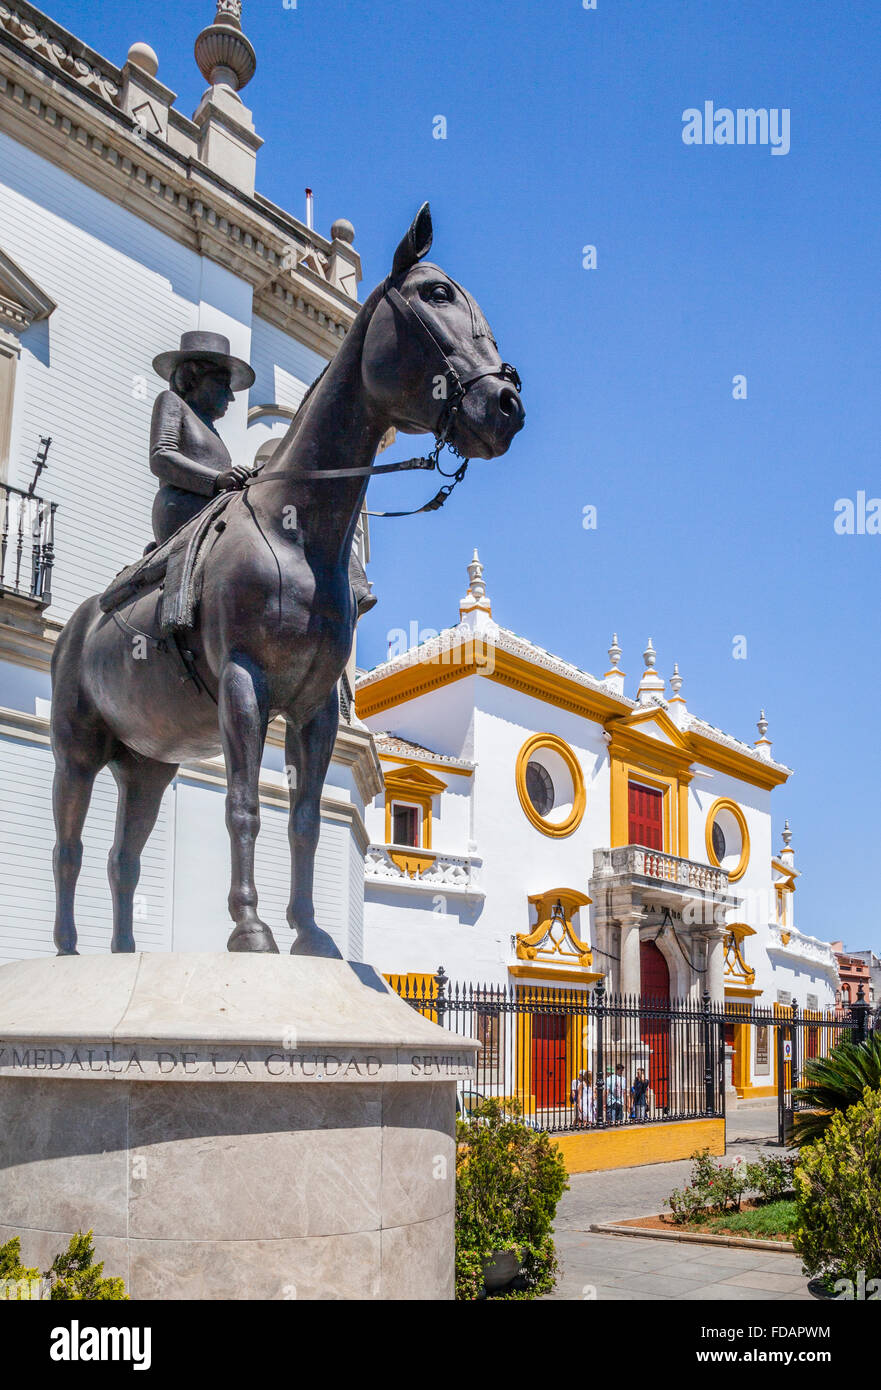 Spain, Andalusia, Province of Seville, Seville, Plaza de Torros, equestrian statue of La Augusta Senora Condesa de Barcelona Stock Photo